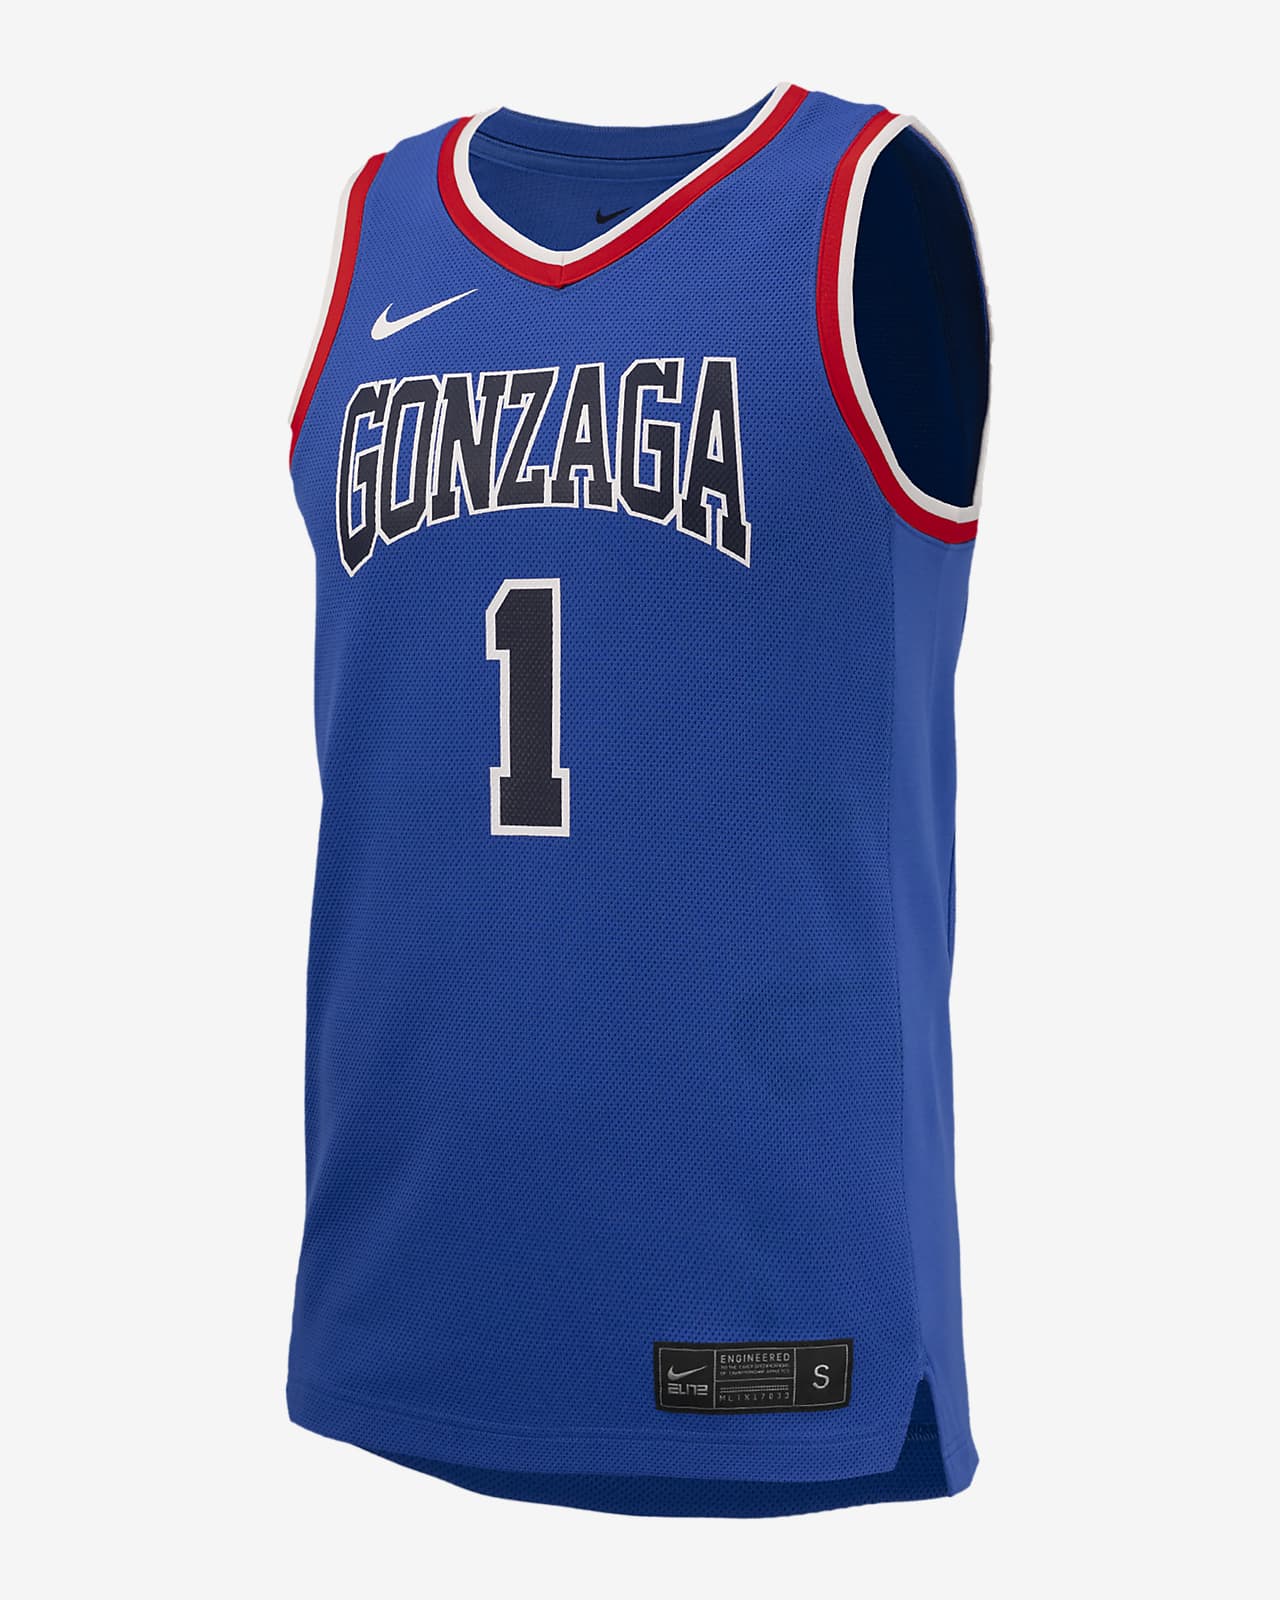 Jersey de básquetbol universitario Nike Replica para hombre Gonzaga